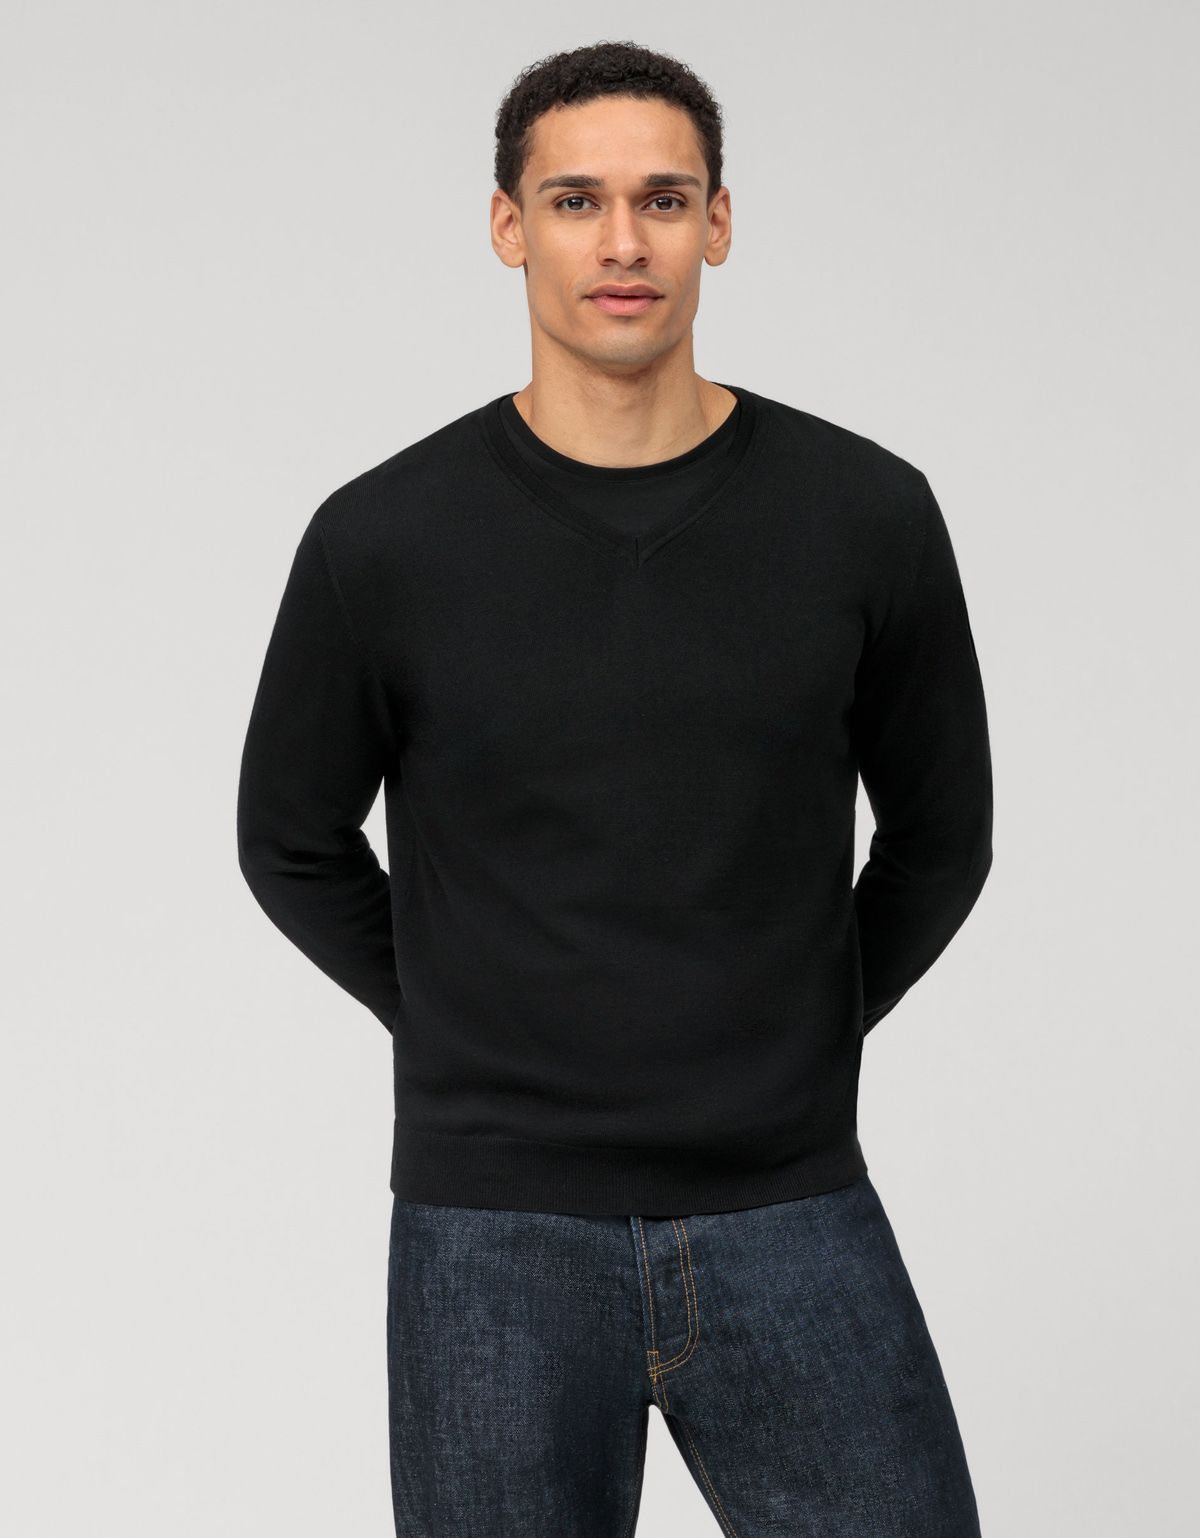 Пуловер чёрный мужской OLYMP, modern fit[ЧЕРНЫЙ]